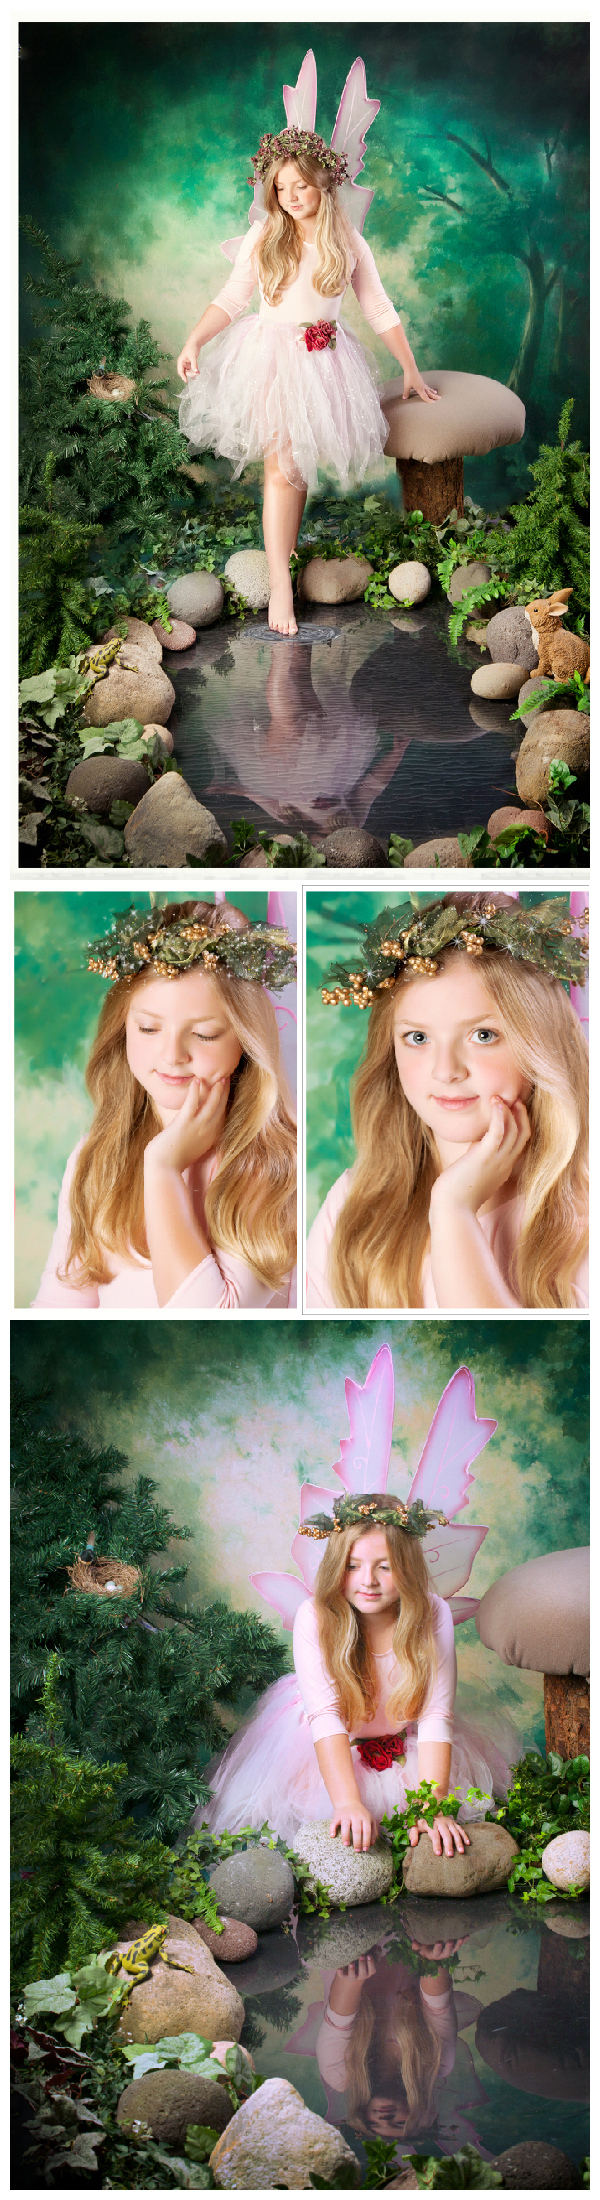 ENchantment Portrait fairy photo sessions-Bonney Lake Photographer-Karen Wolfe PHotography